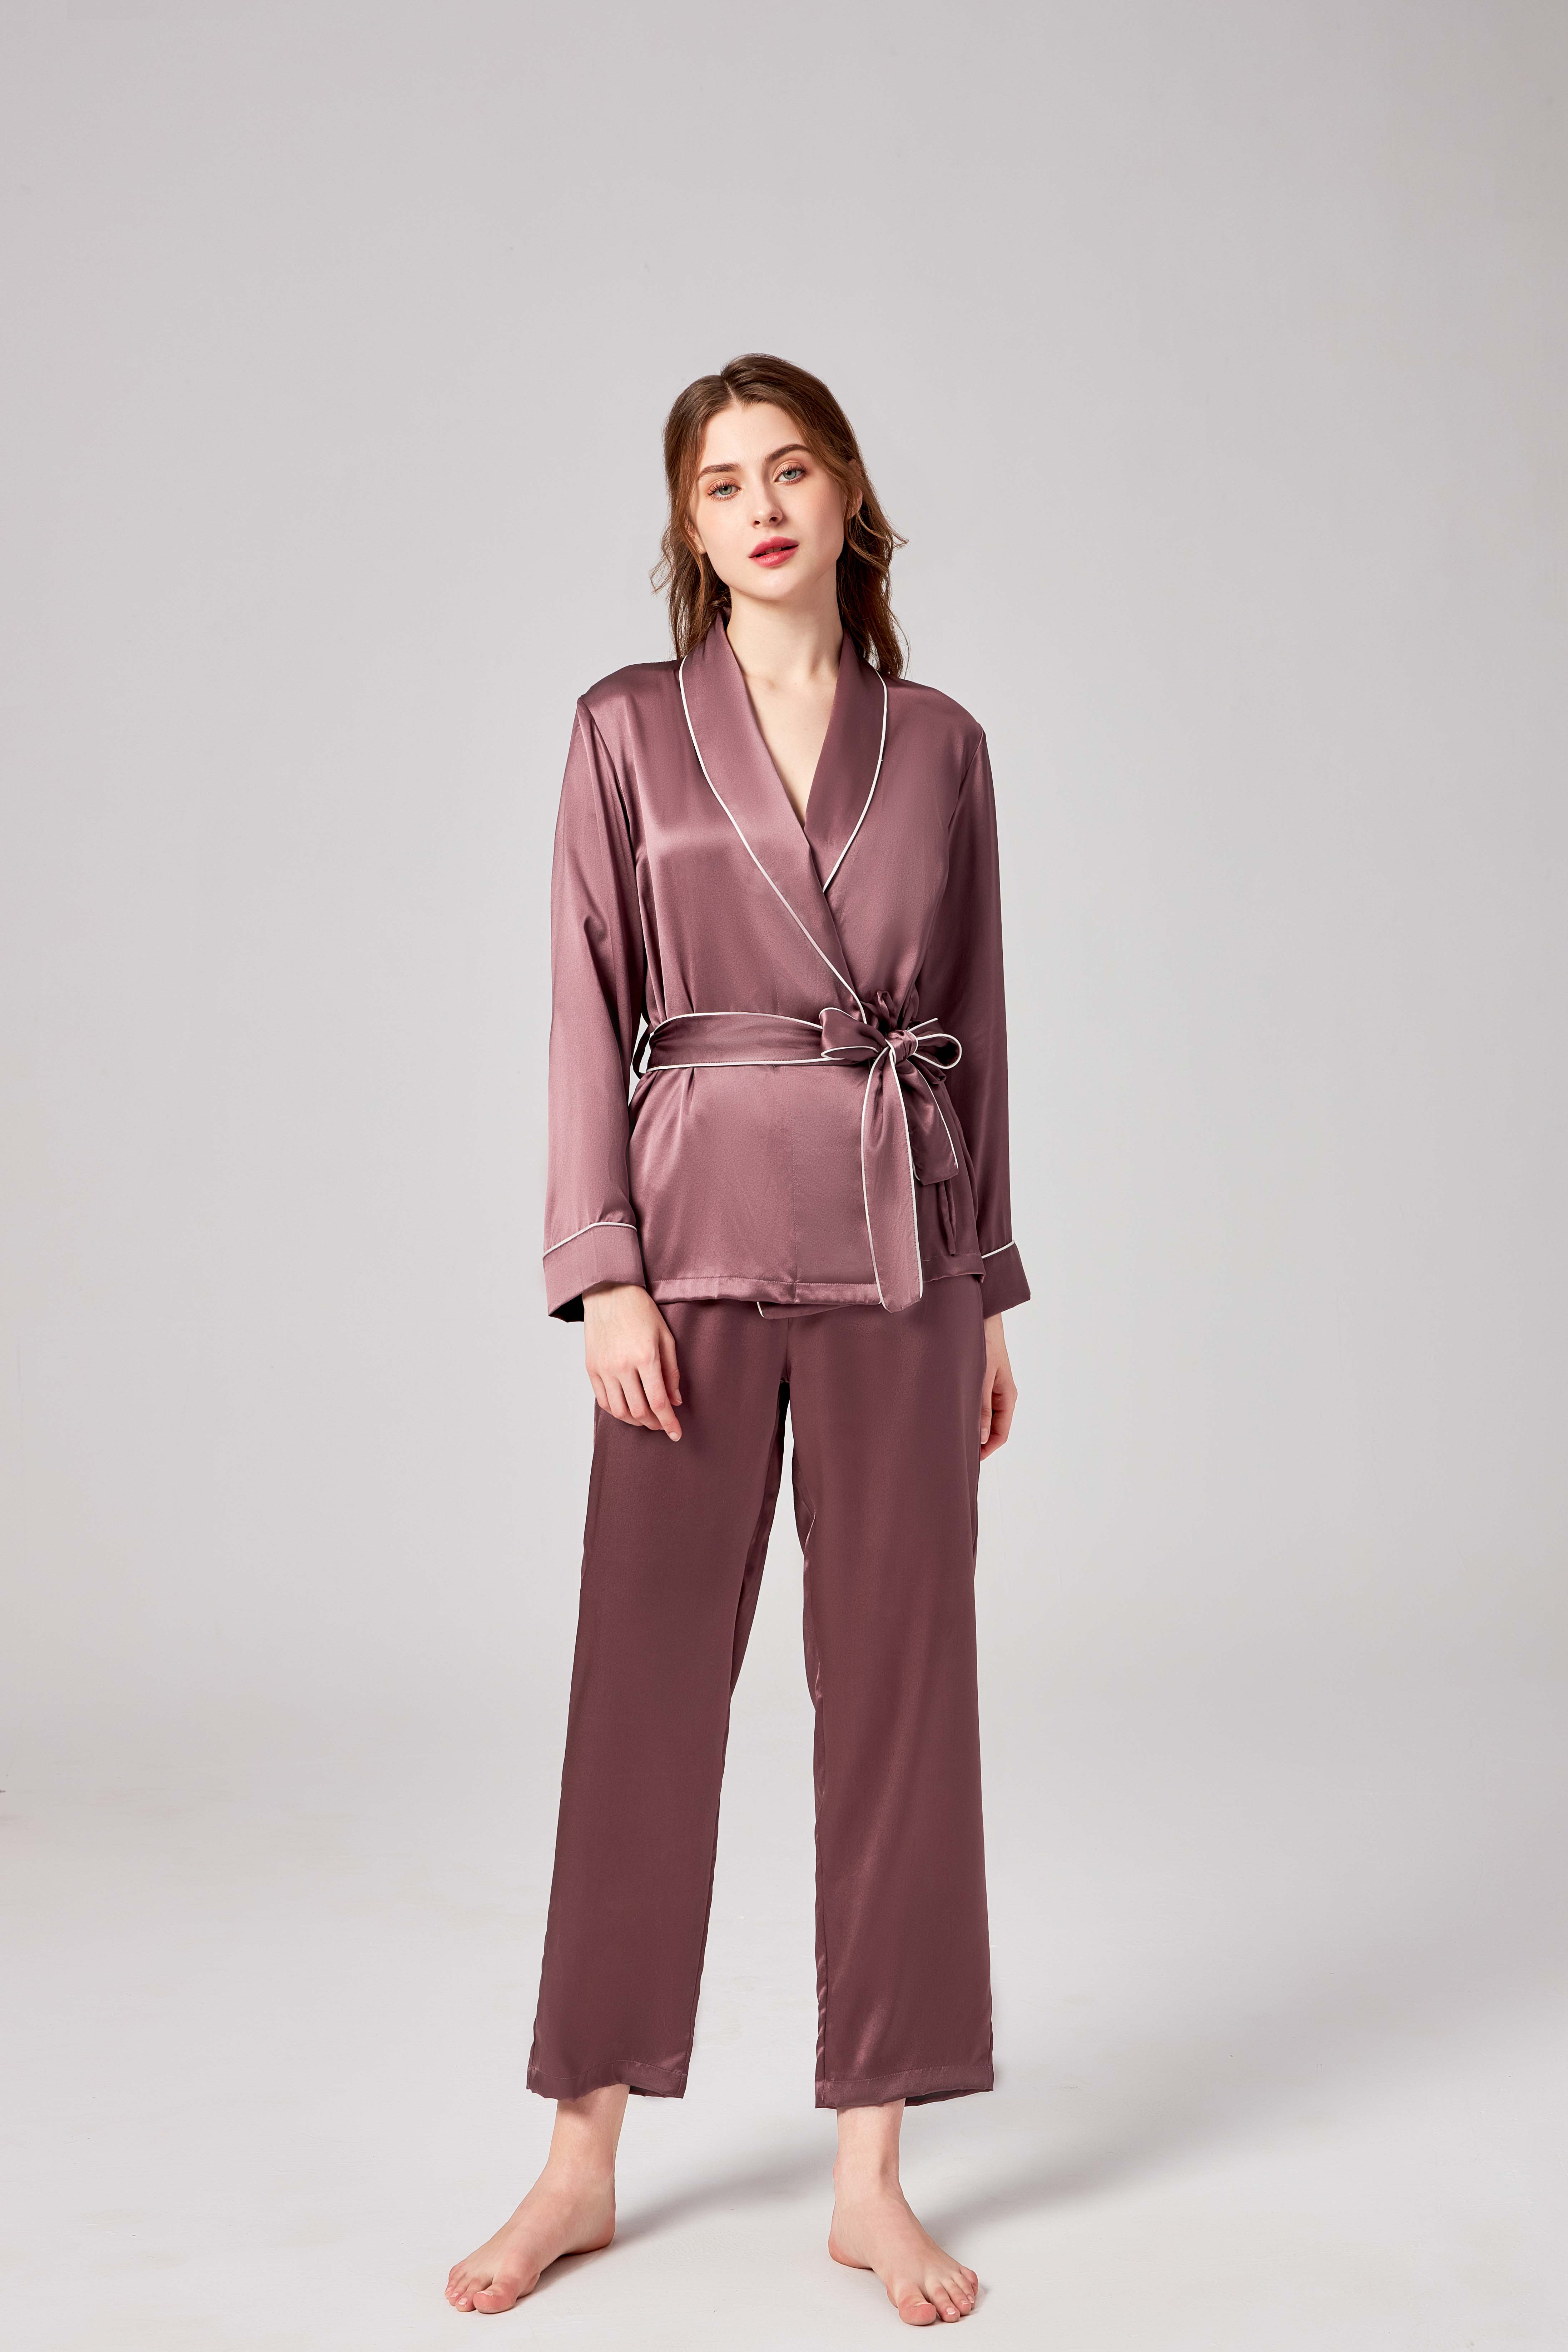 Luxury loungewear 22mm long sleeves silk pajamas for woman - Buy luxury ...